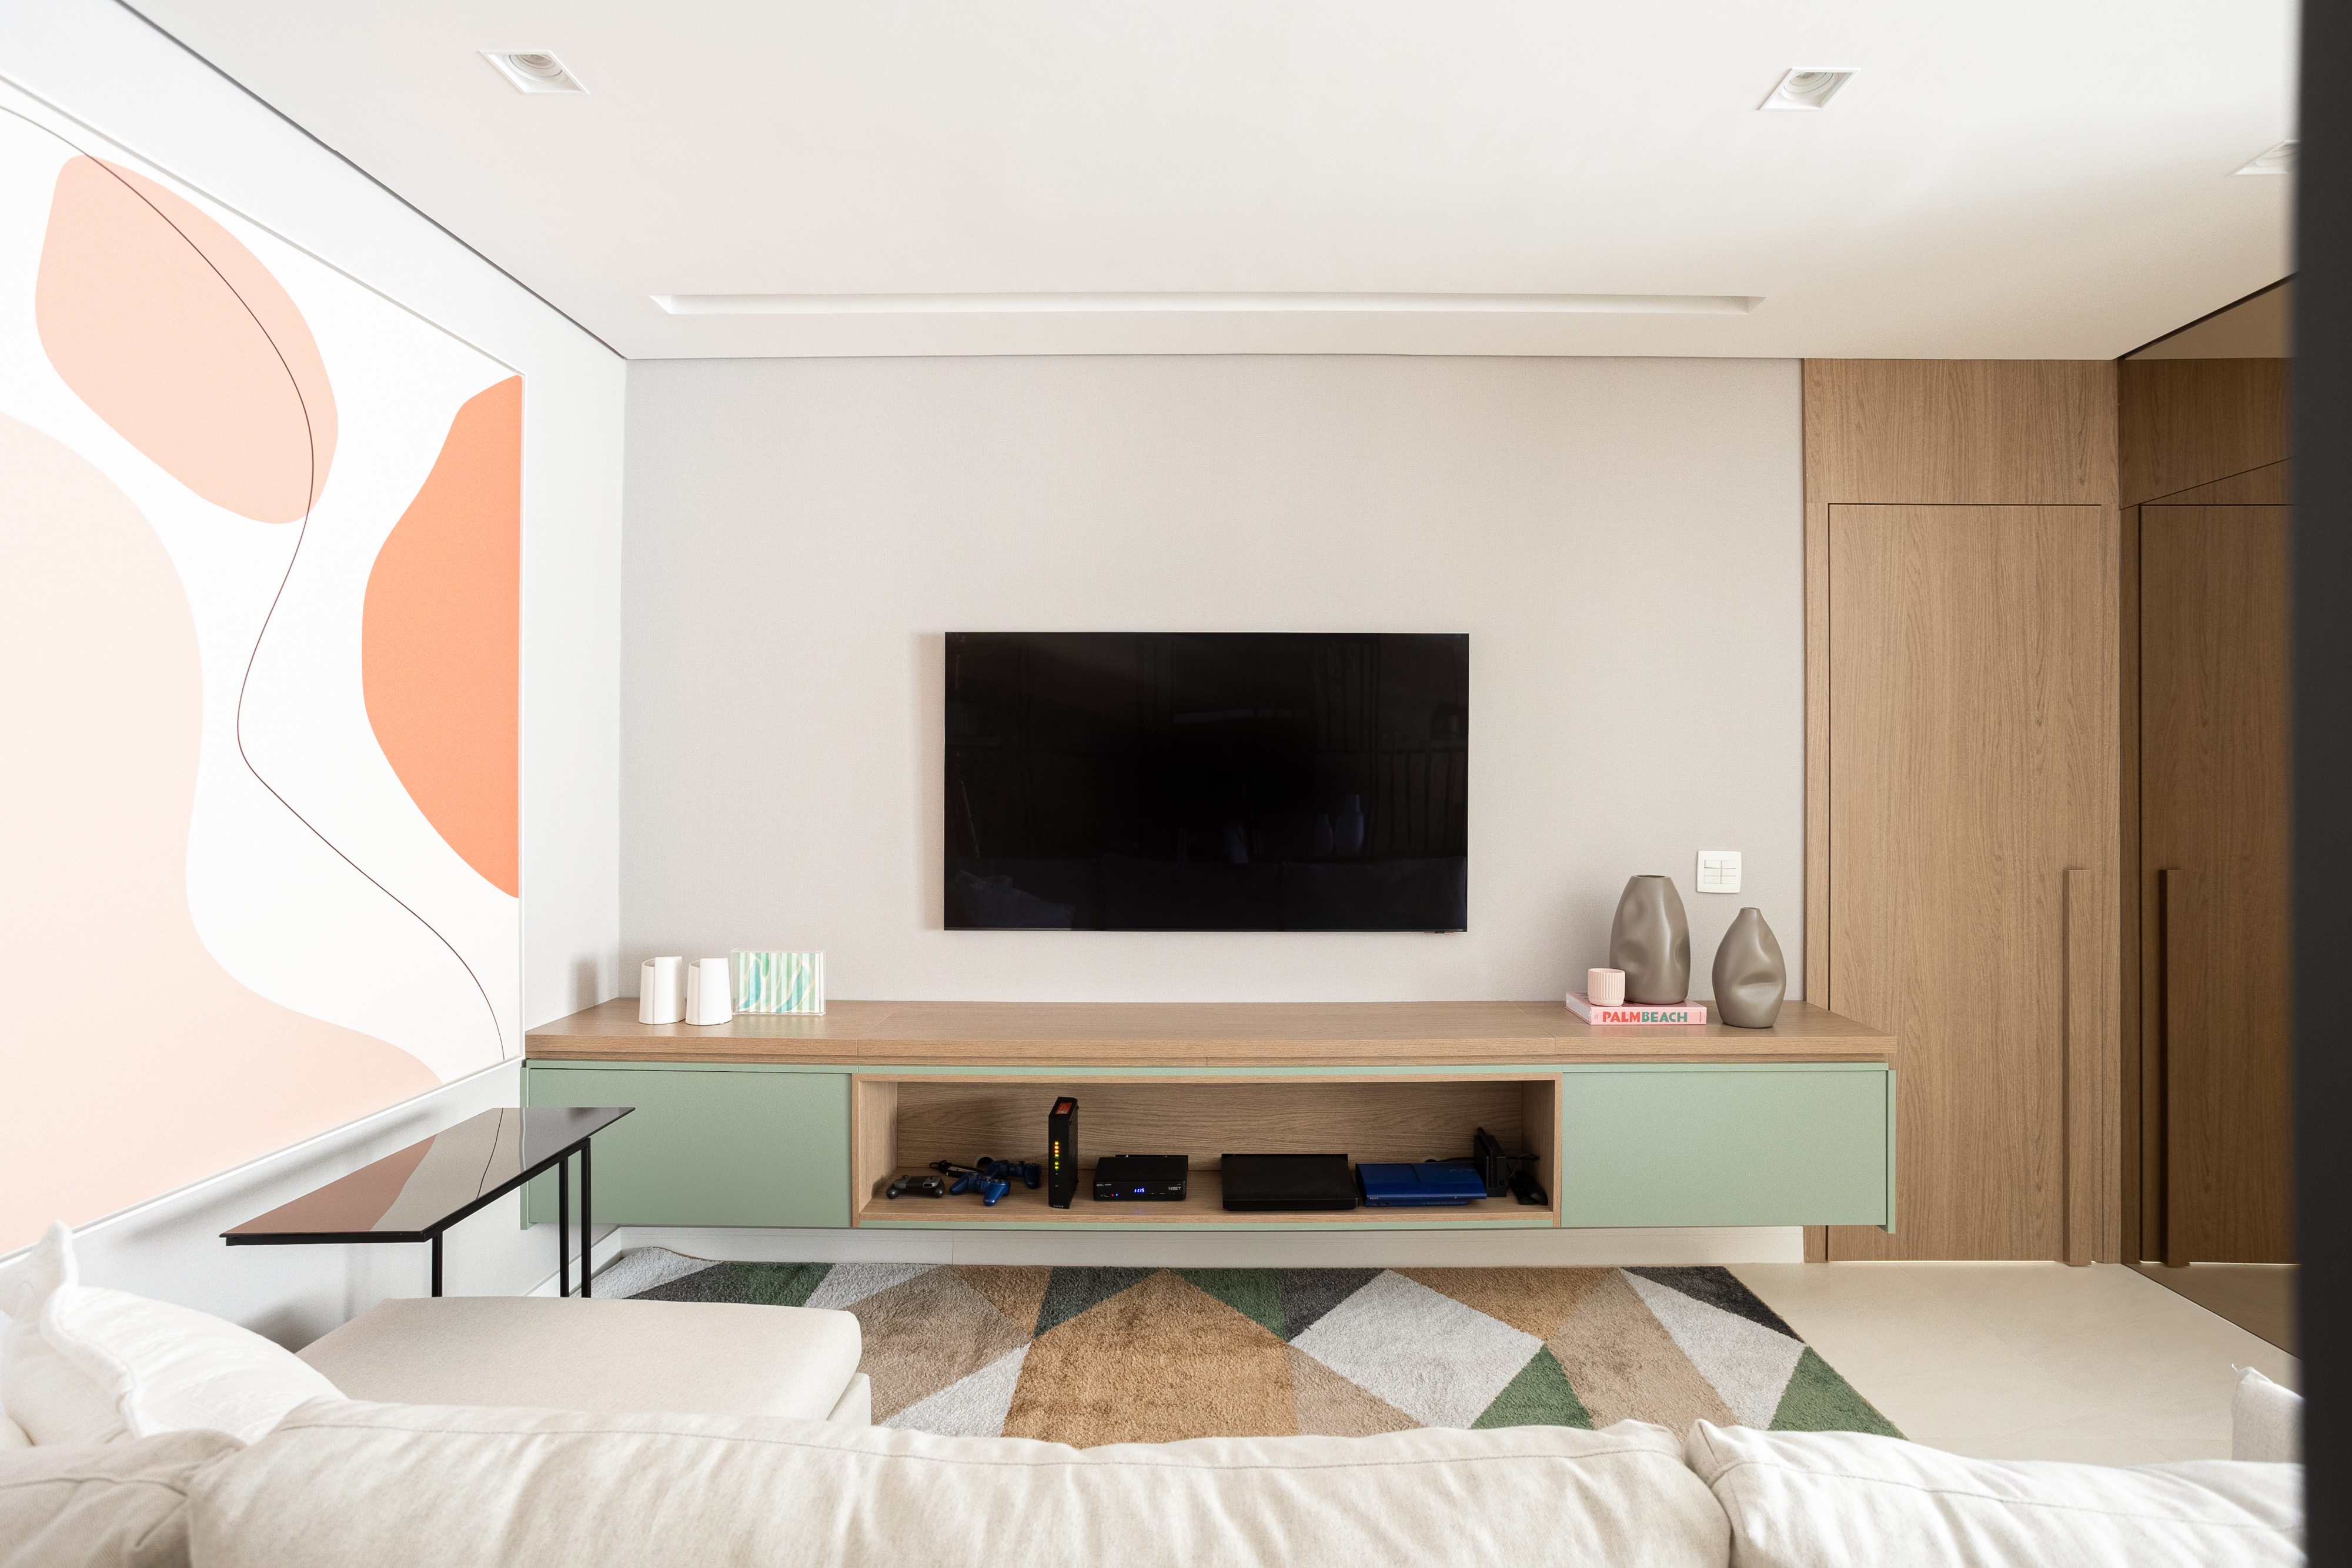 Apartamento de 140 m² possui parede de pedra moledo e quarto montessoriano. Projeto Loft 7 Arquitetura. Na foto, sala de tv com tapete colorido e quadro.